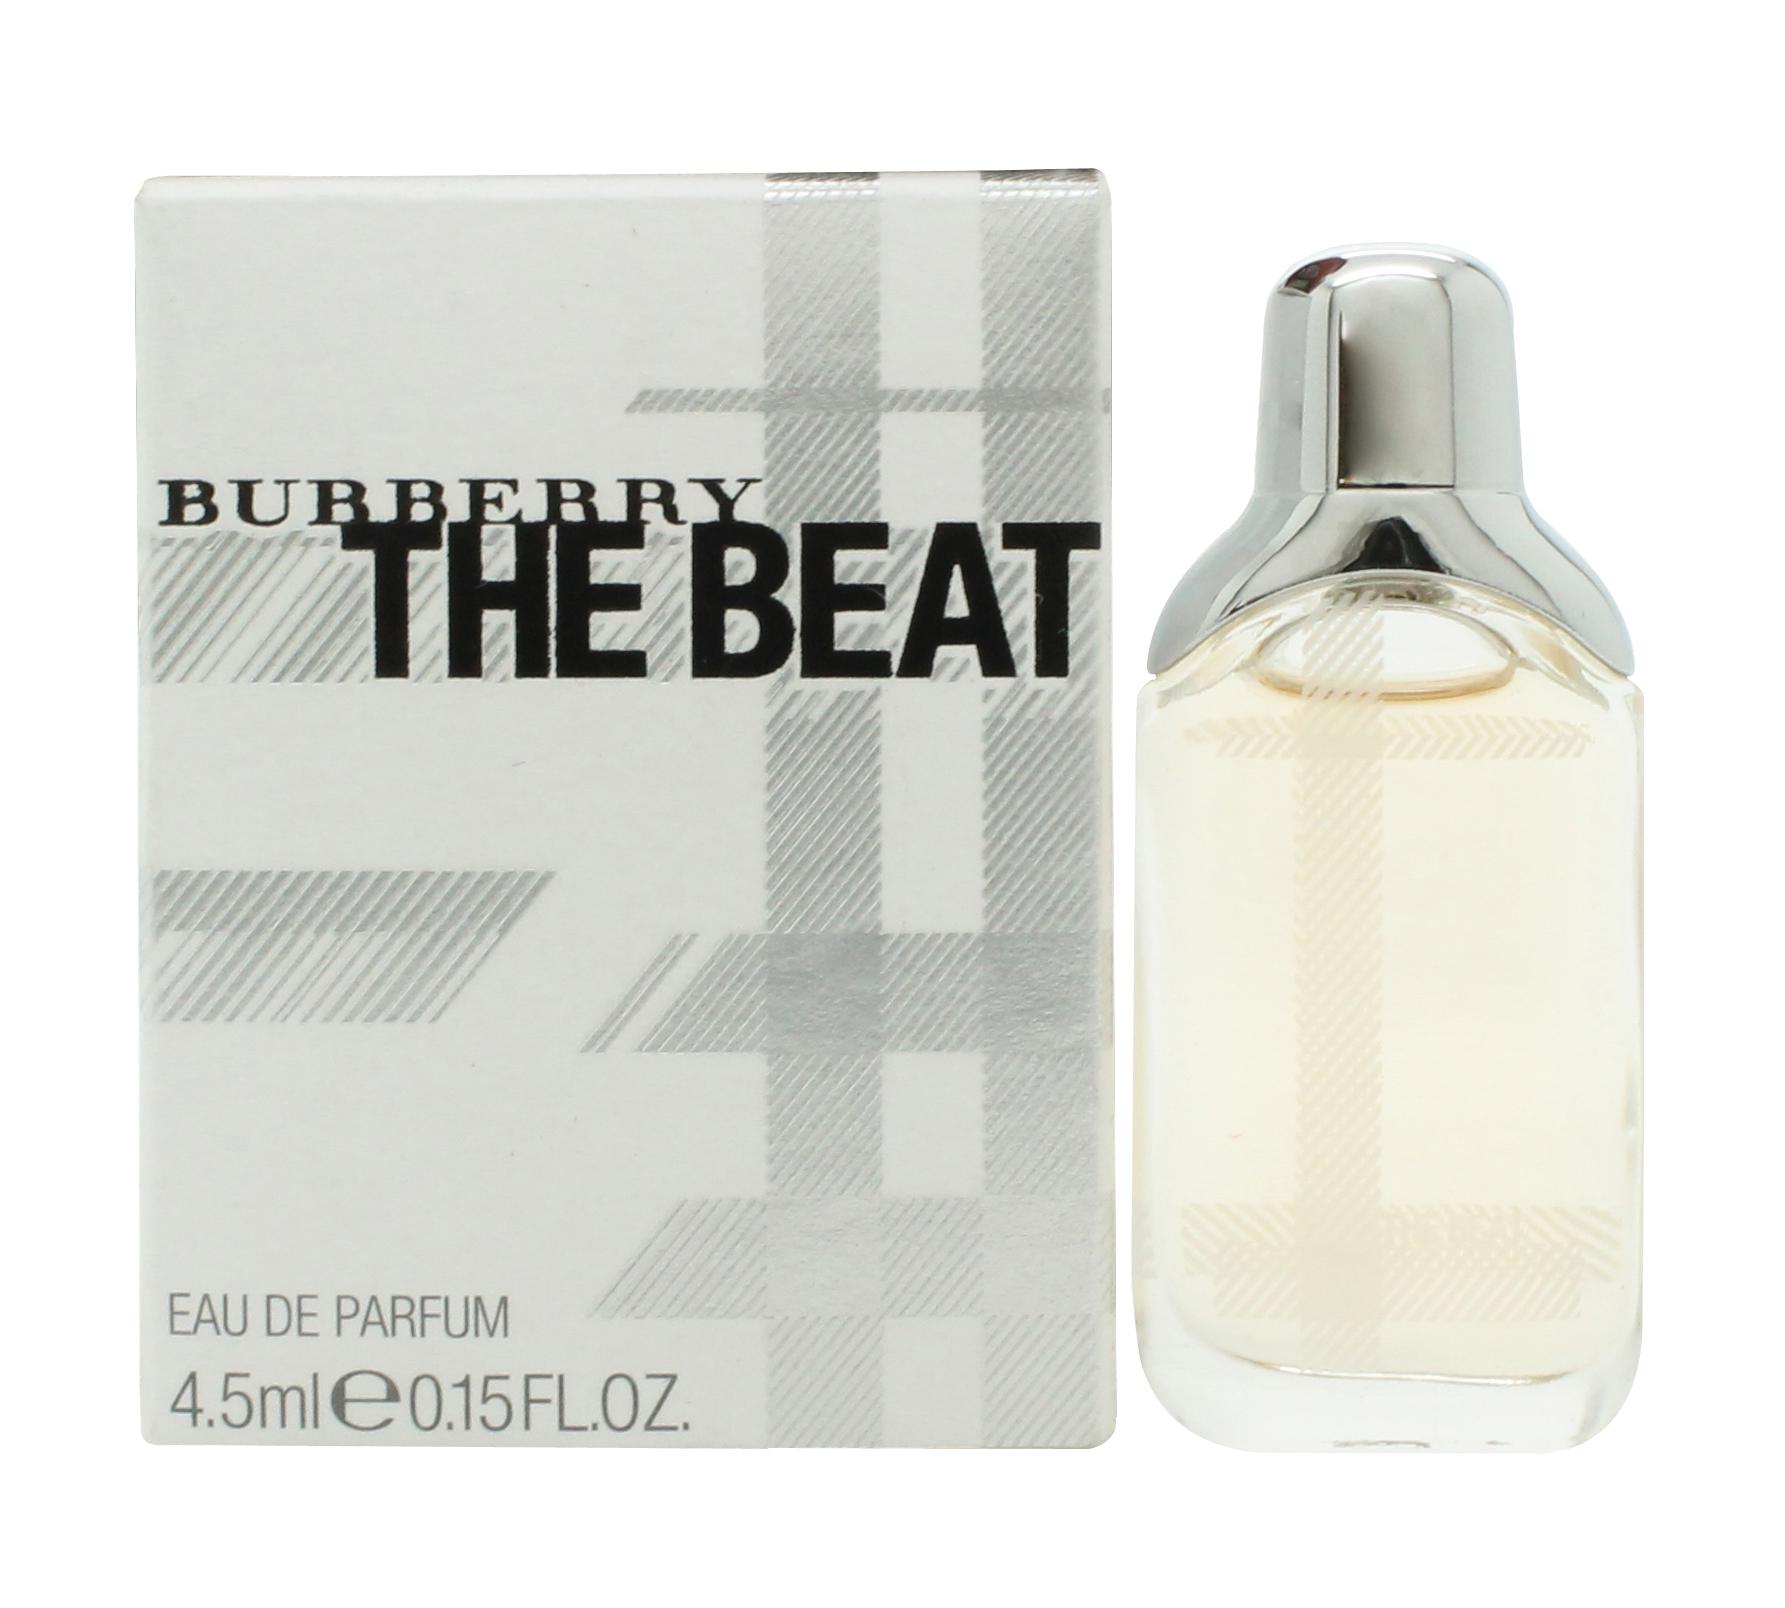 Burberry The Beat Eau de Parfum 4.5ml Spray